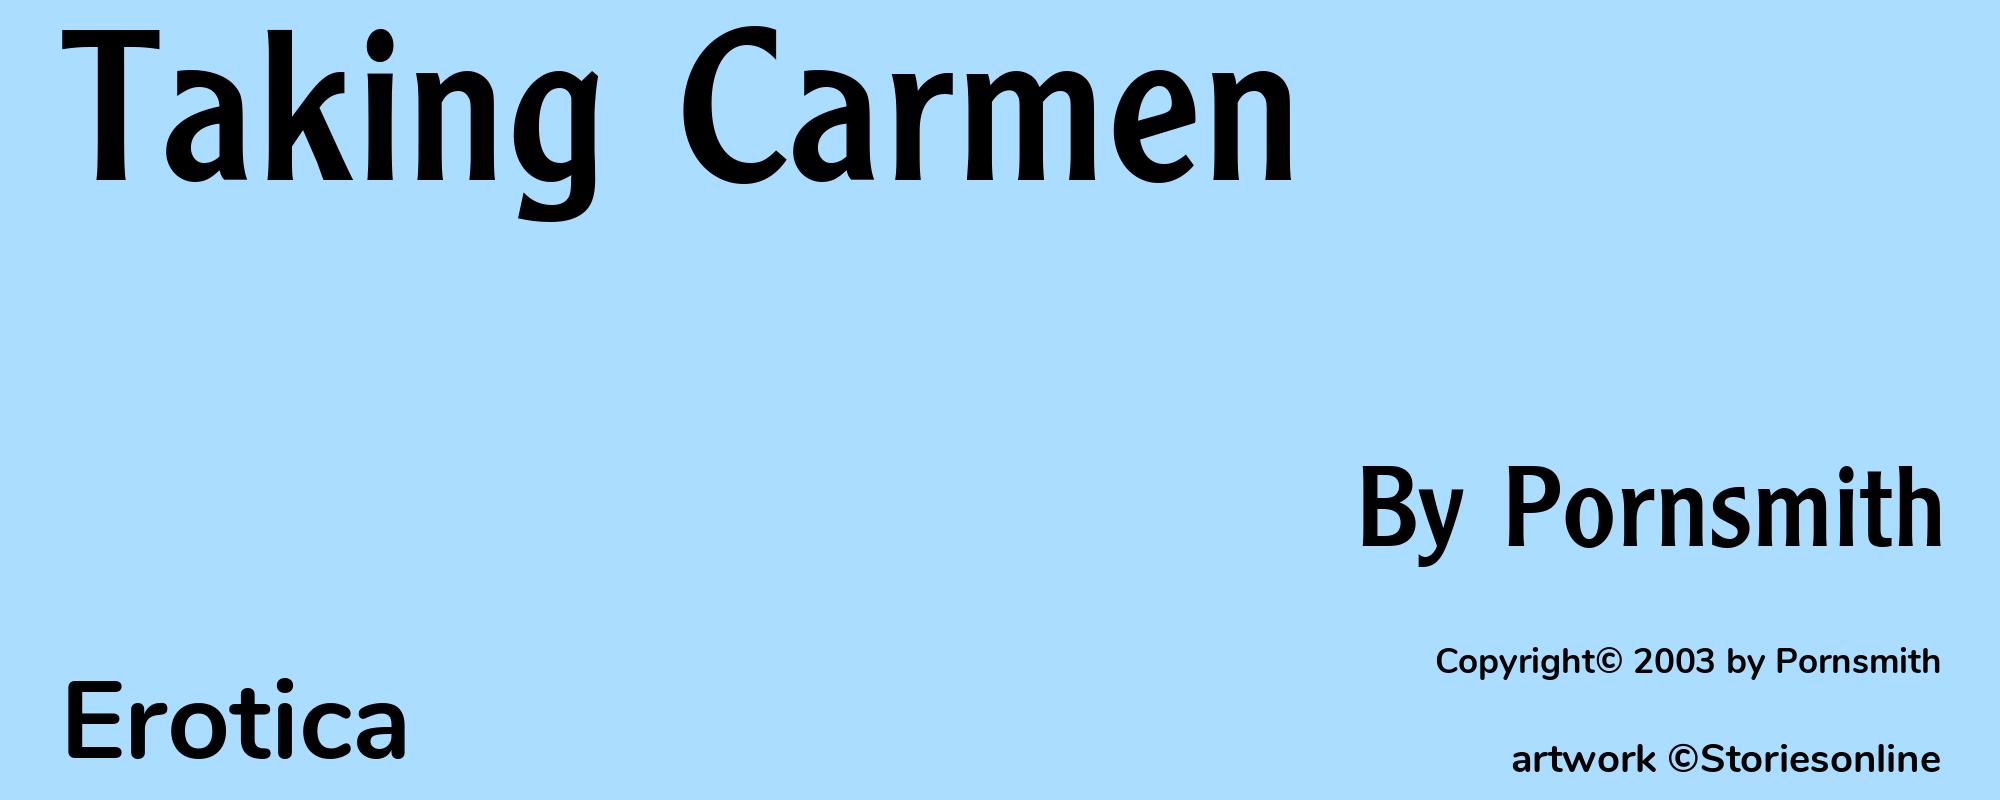 Taking Carmen - Cover